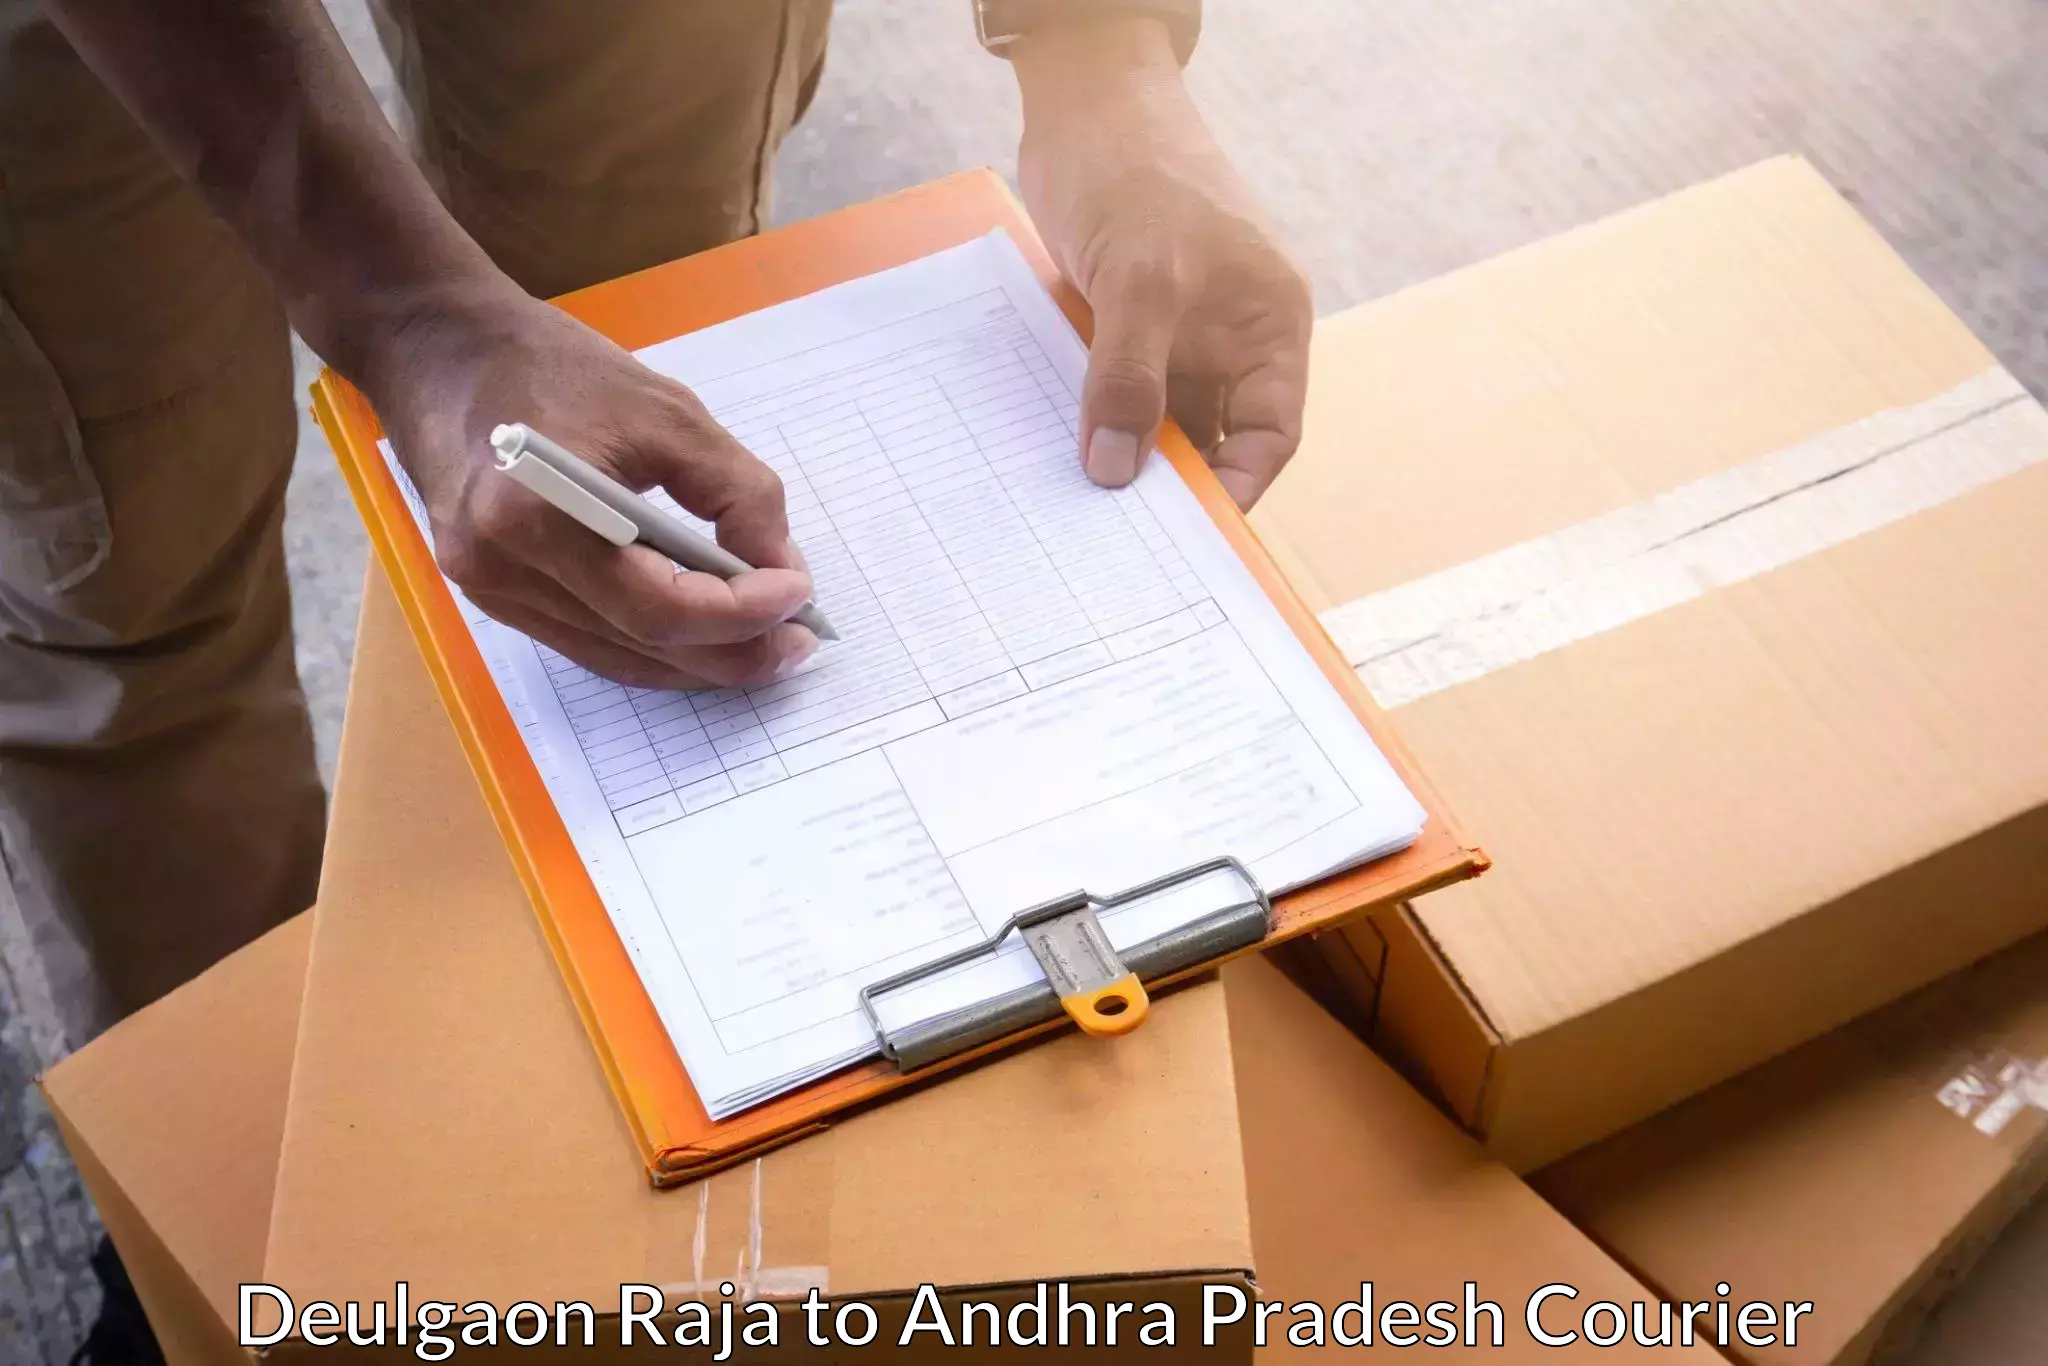 Reliable logistics providers Deulgaon Raja to Bhogapuram